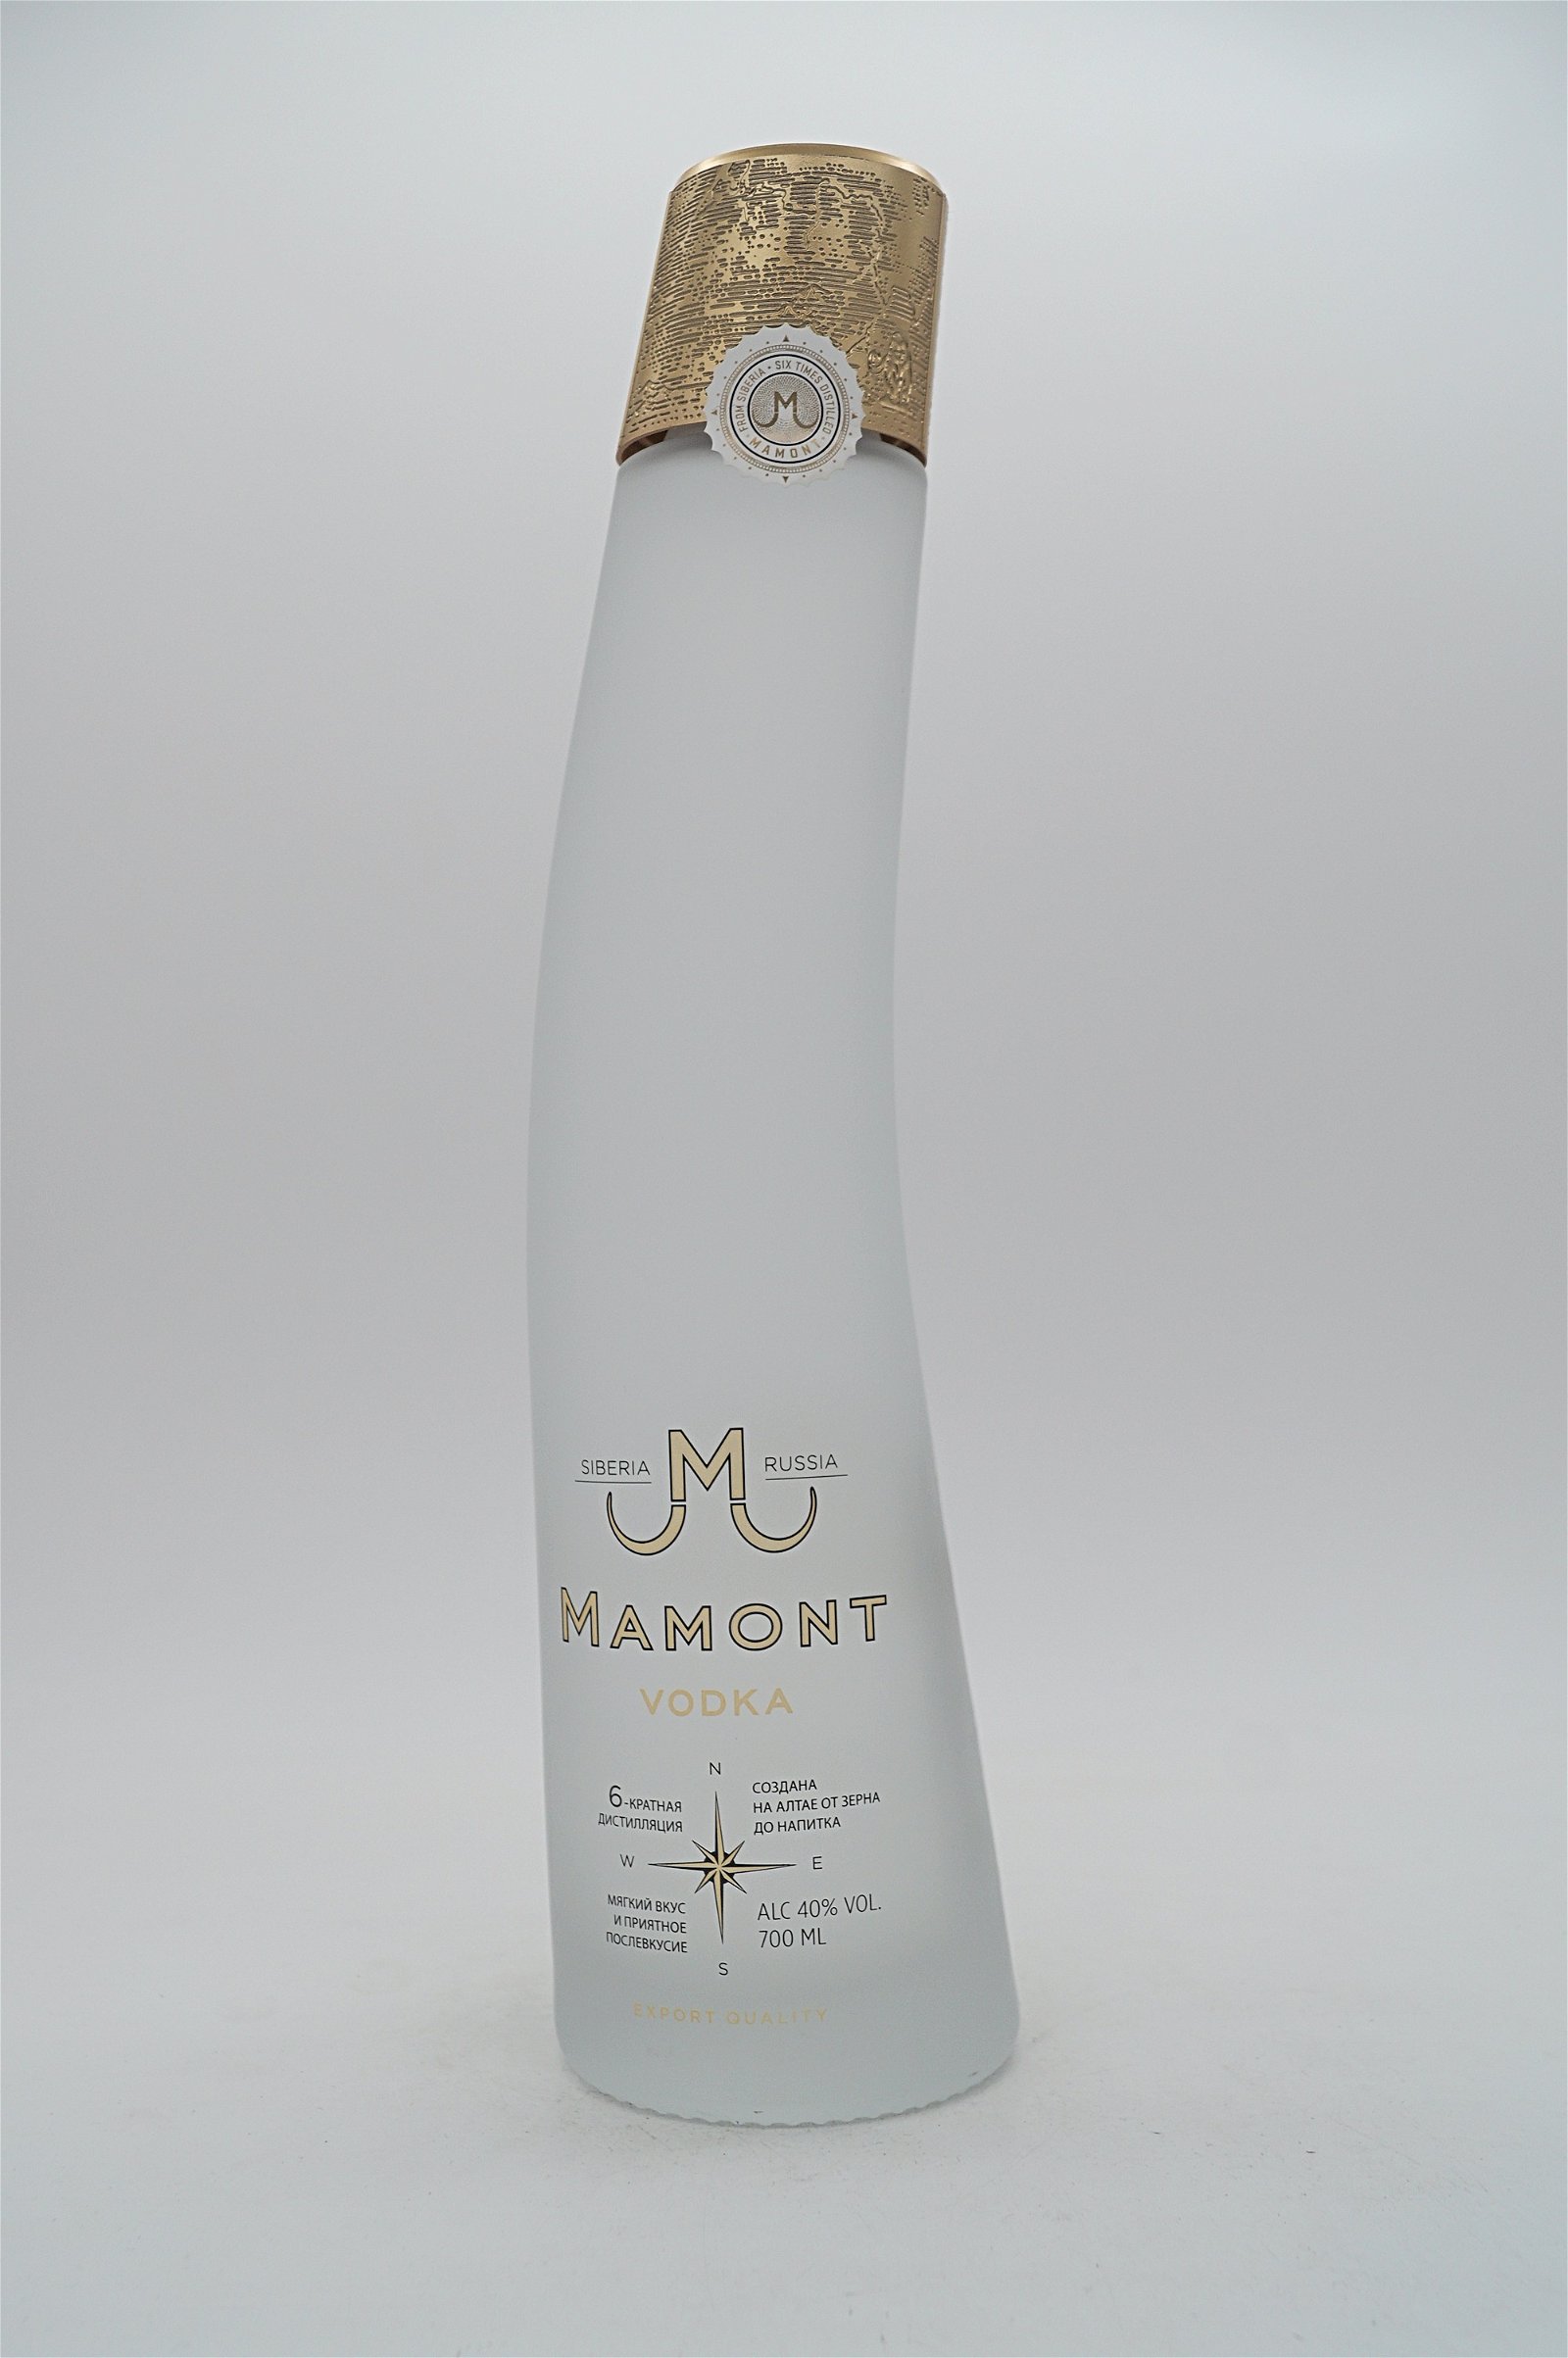 Mamont Russia Vodka